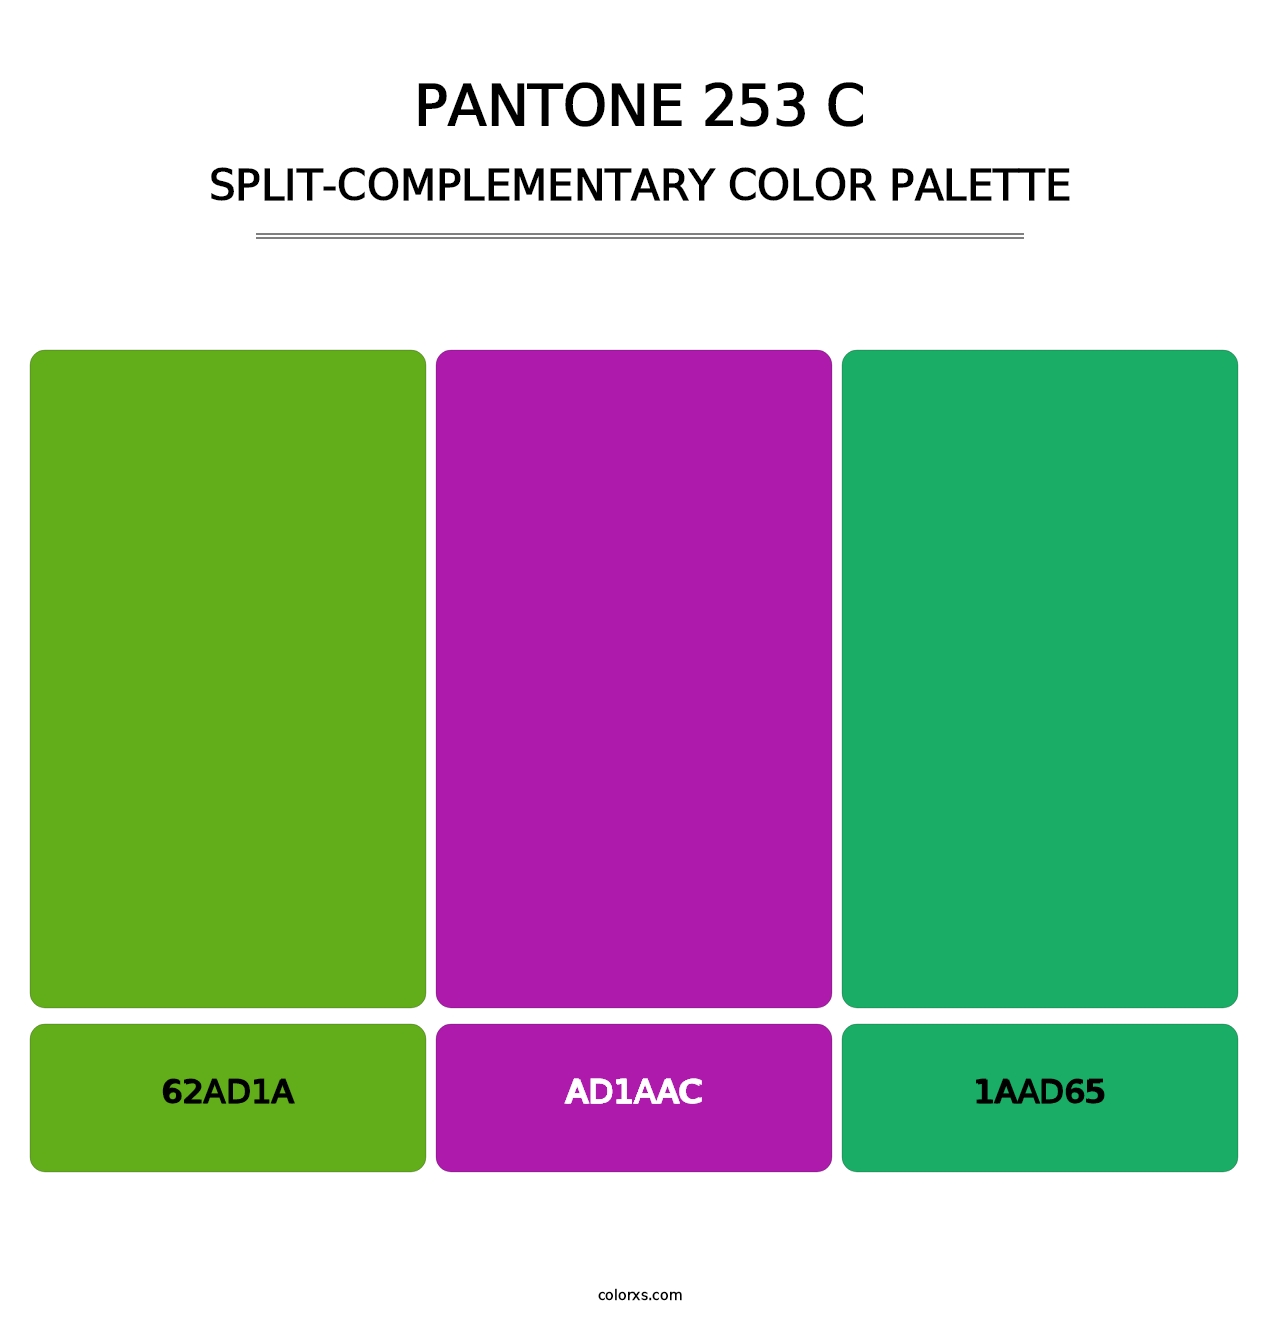 PANTONE 253 C - Split-Complementary Color Palette